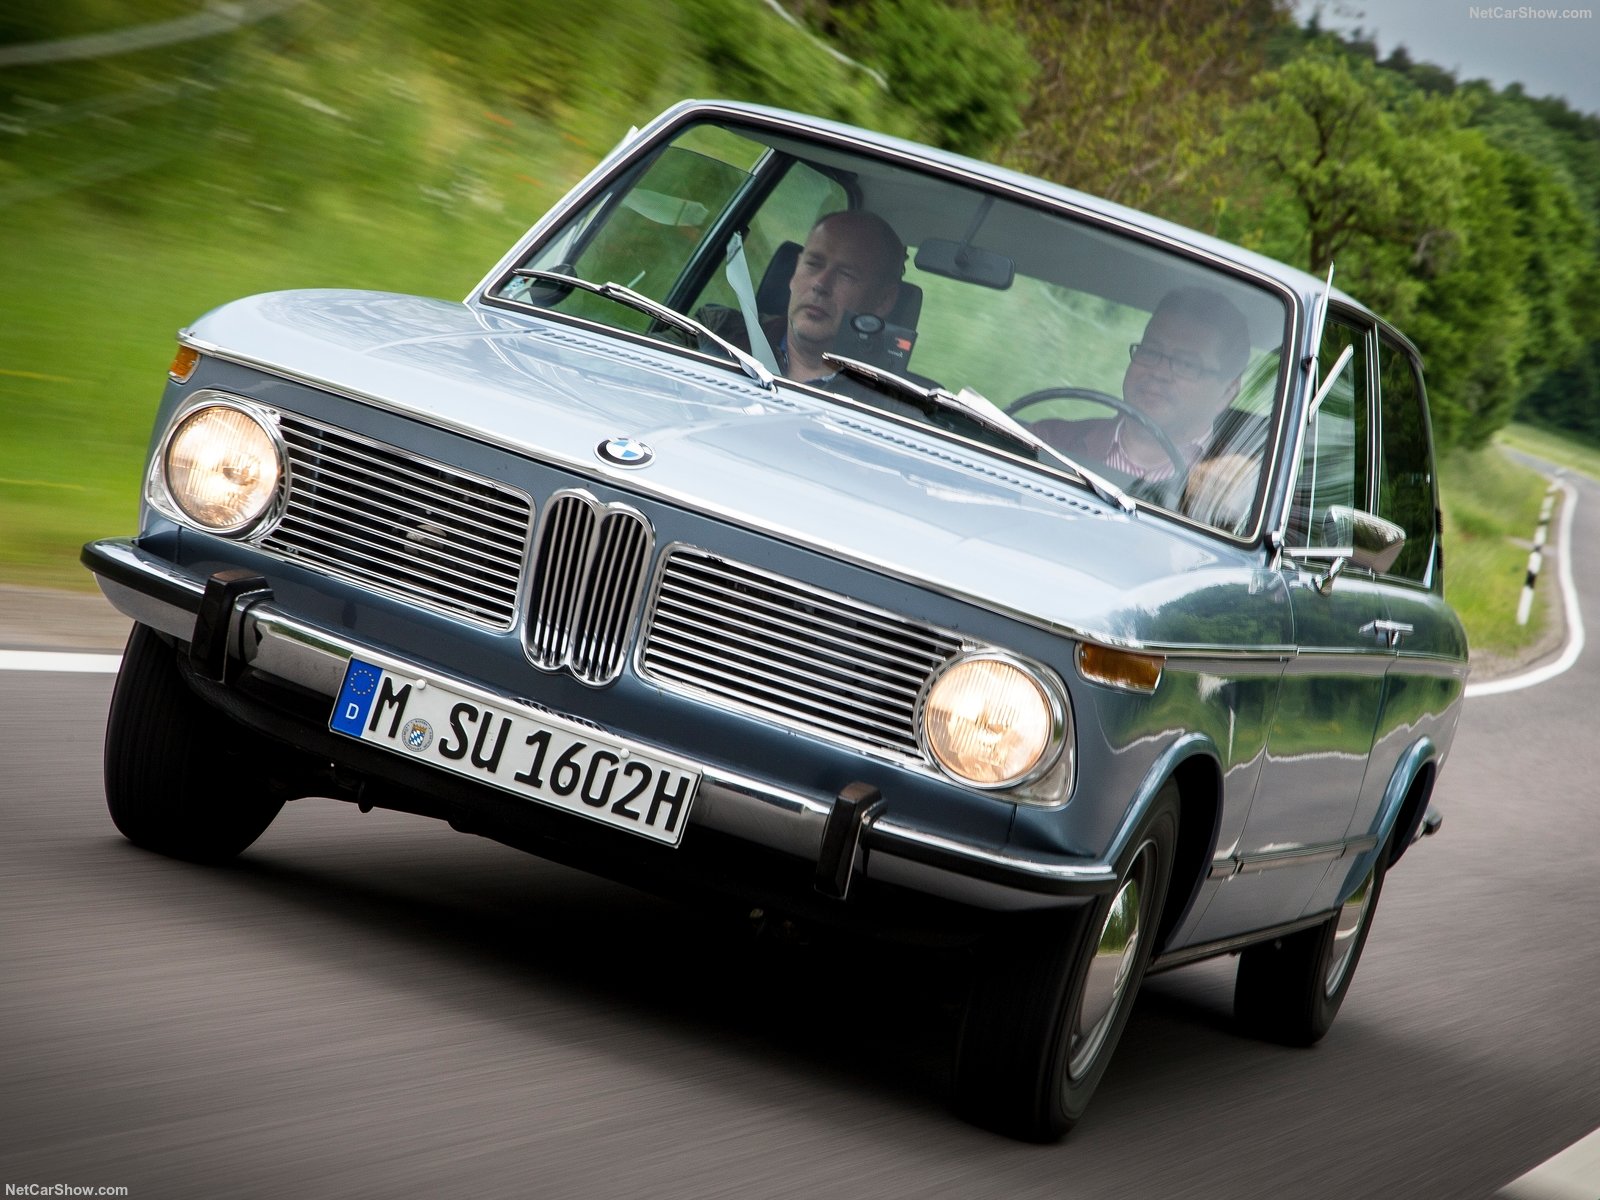 BMW 1802 Touring 1972 BMW-1802_Touring-1972-1600-0c